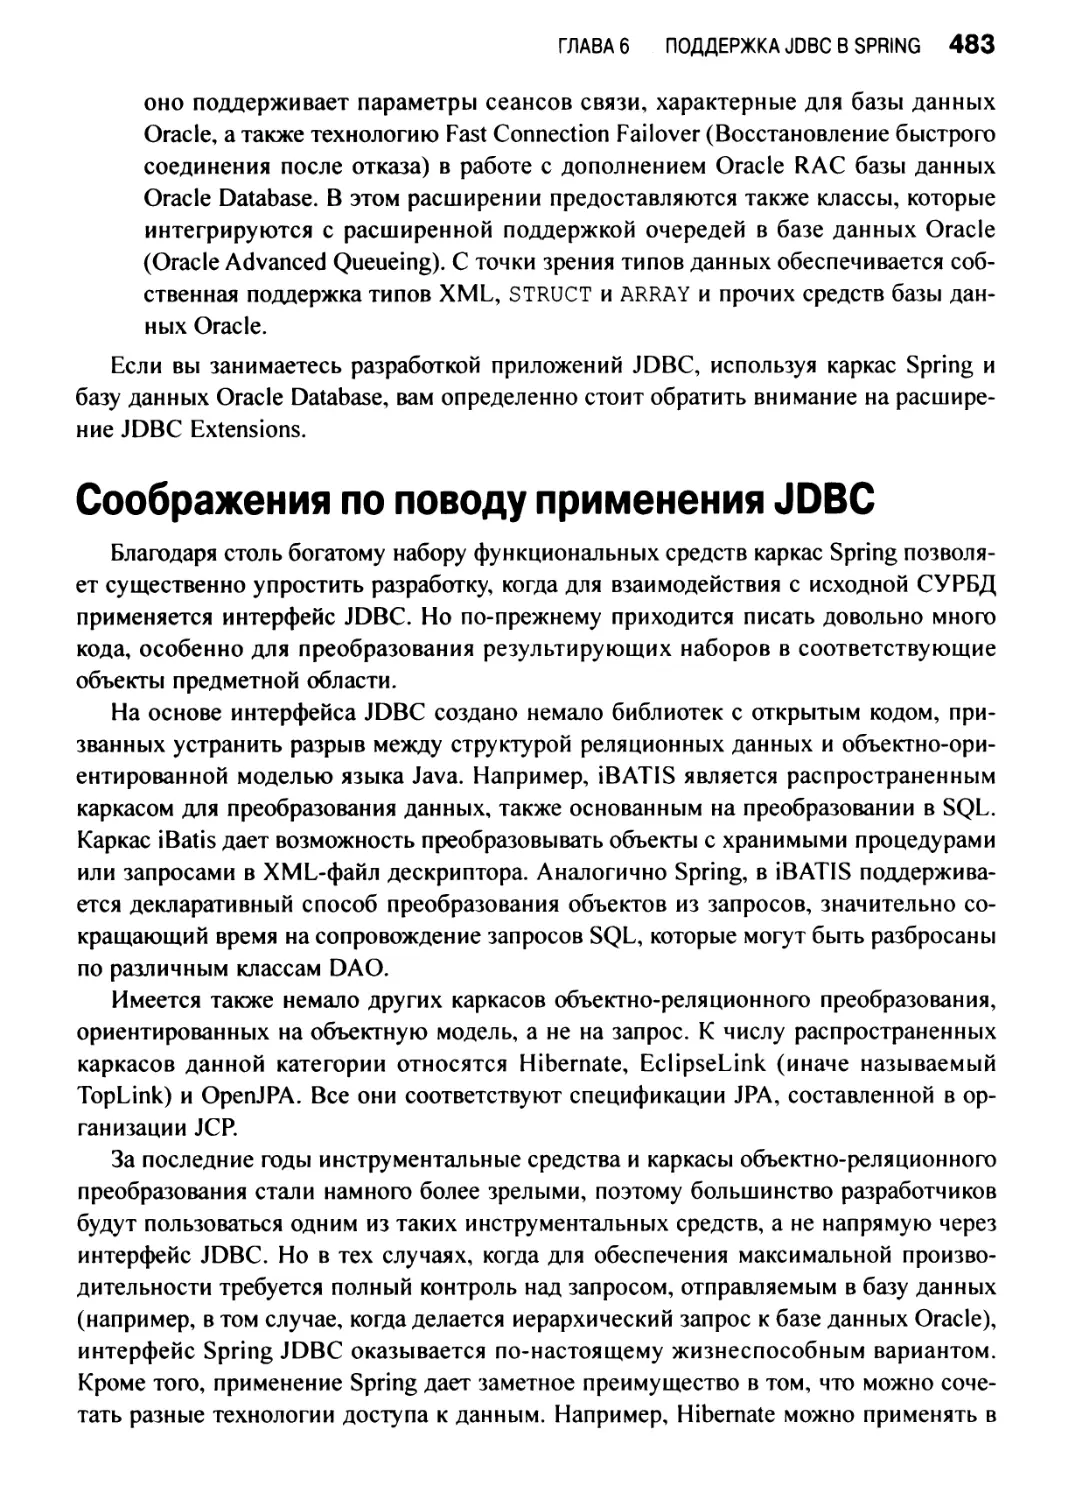 Соображения по поводу применения JDBC